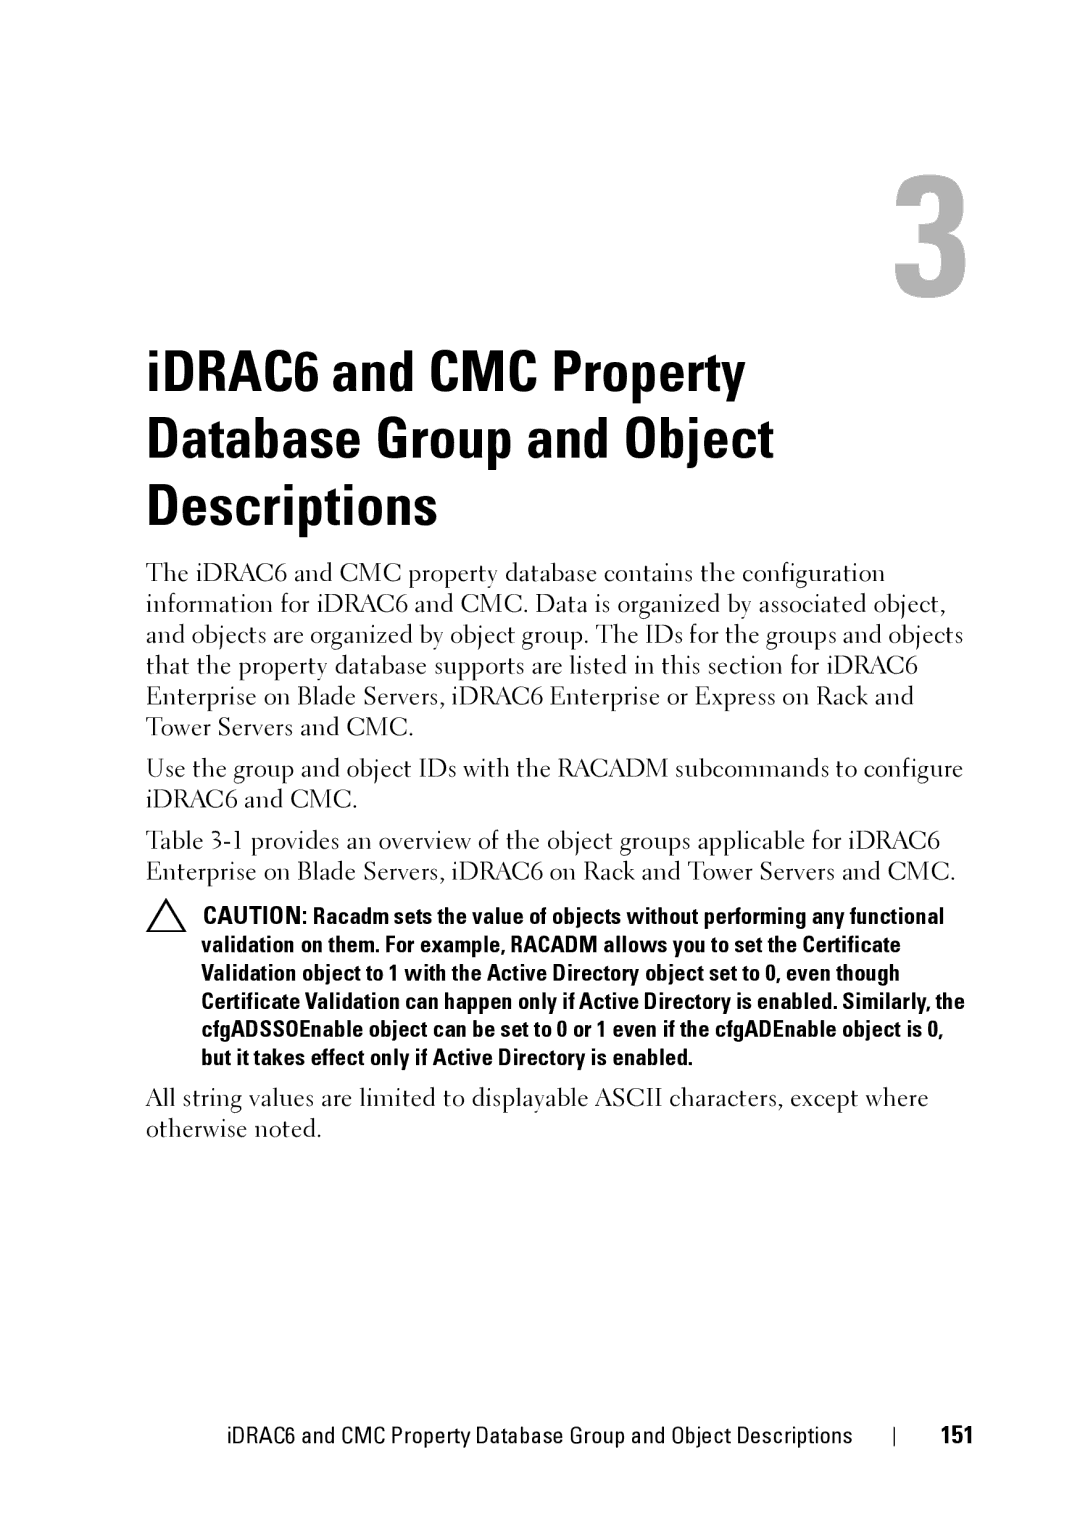 Dell IDRAC6 3.5, IDRAC6 1.95, CMC 3.2 manual 151 